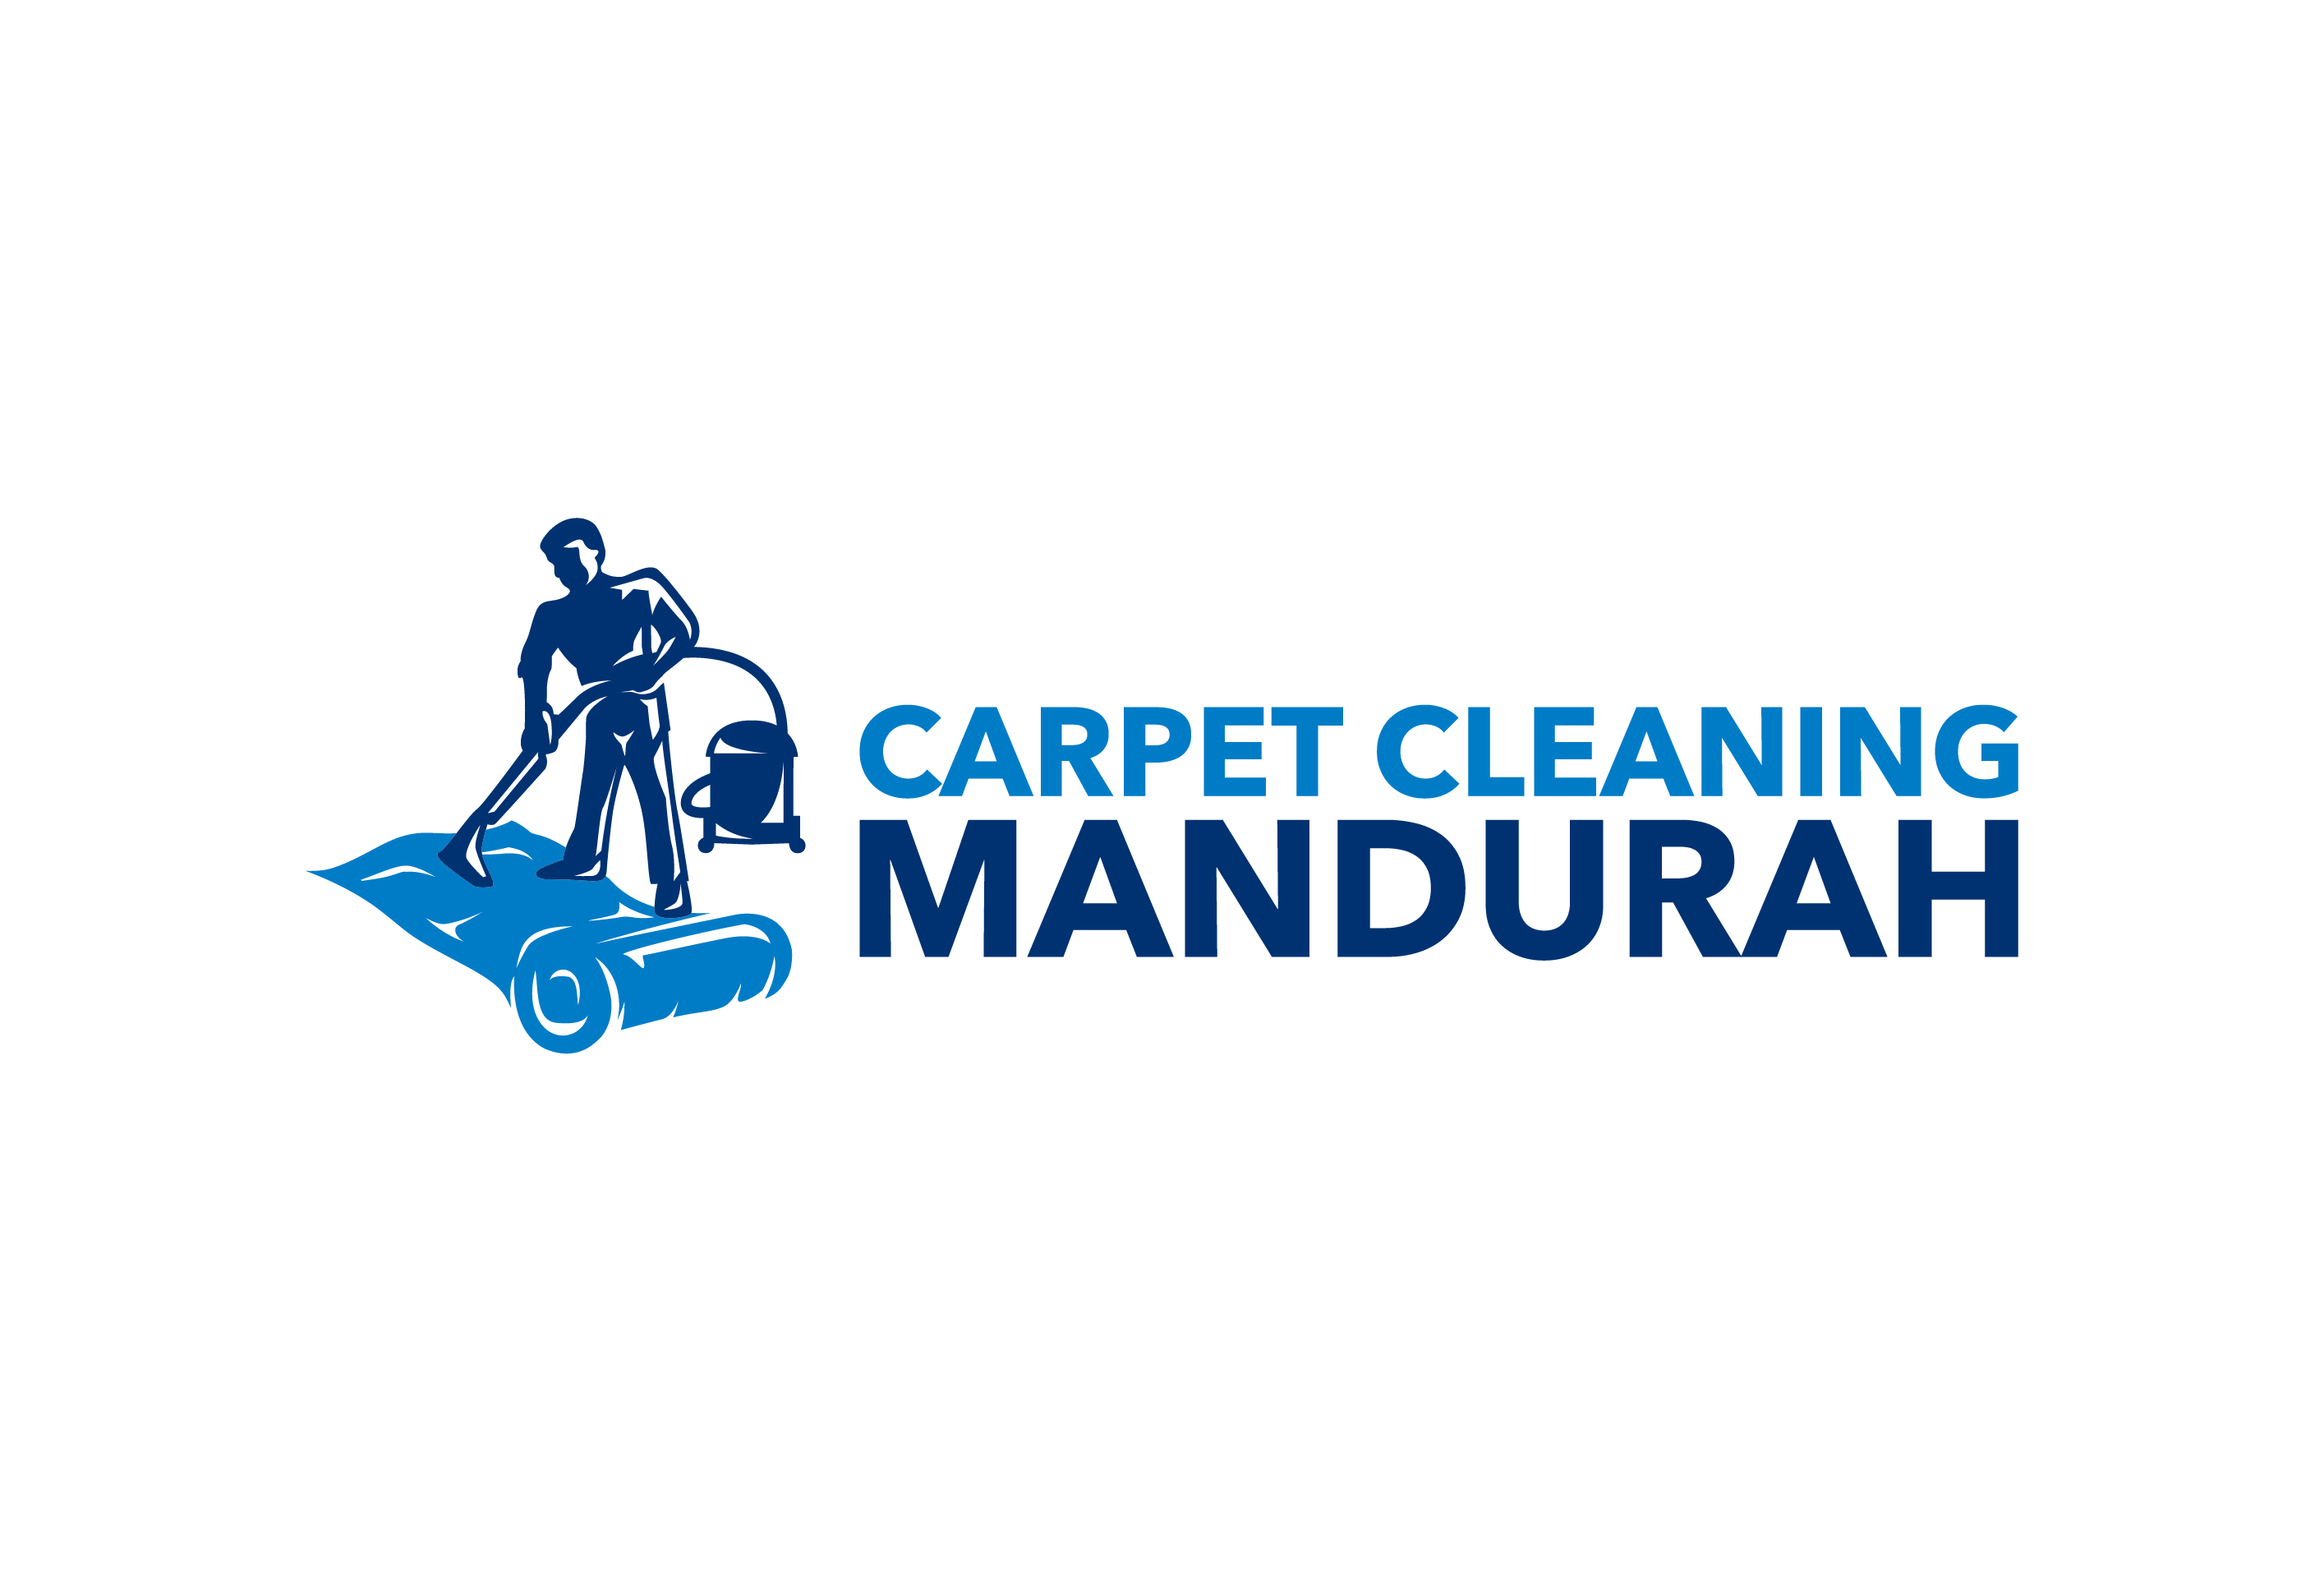 Carpet Logo - Carpet Cleaning Mandurah Wa Logo Cleaning Mandurah